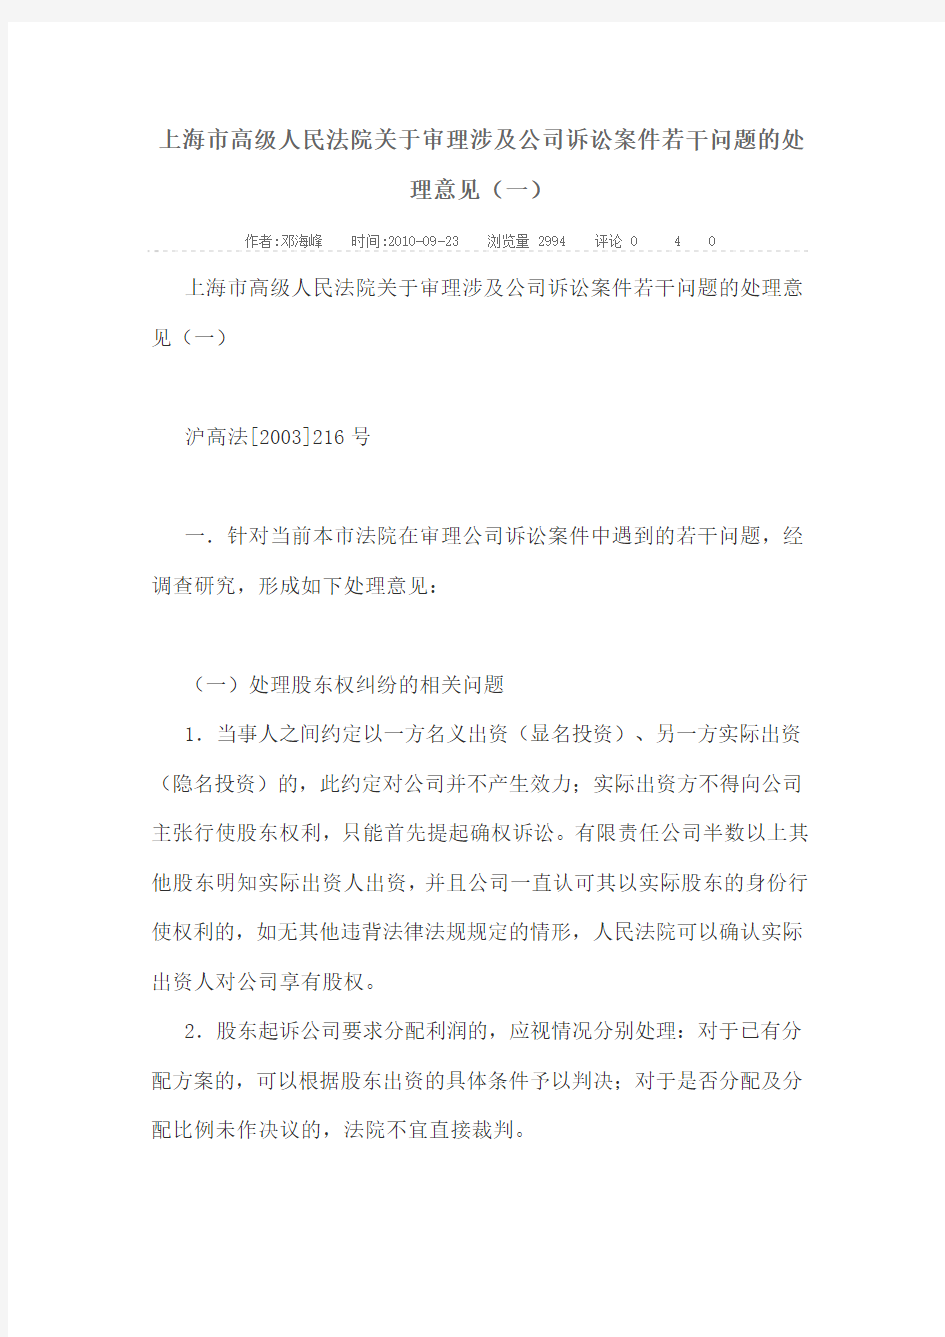 上海市高级人民法院关于审理涉及公司诉讼案件若干问题的处理意见